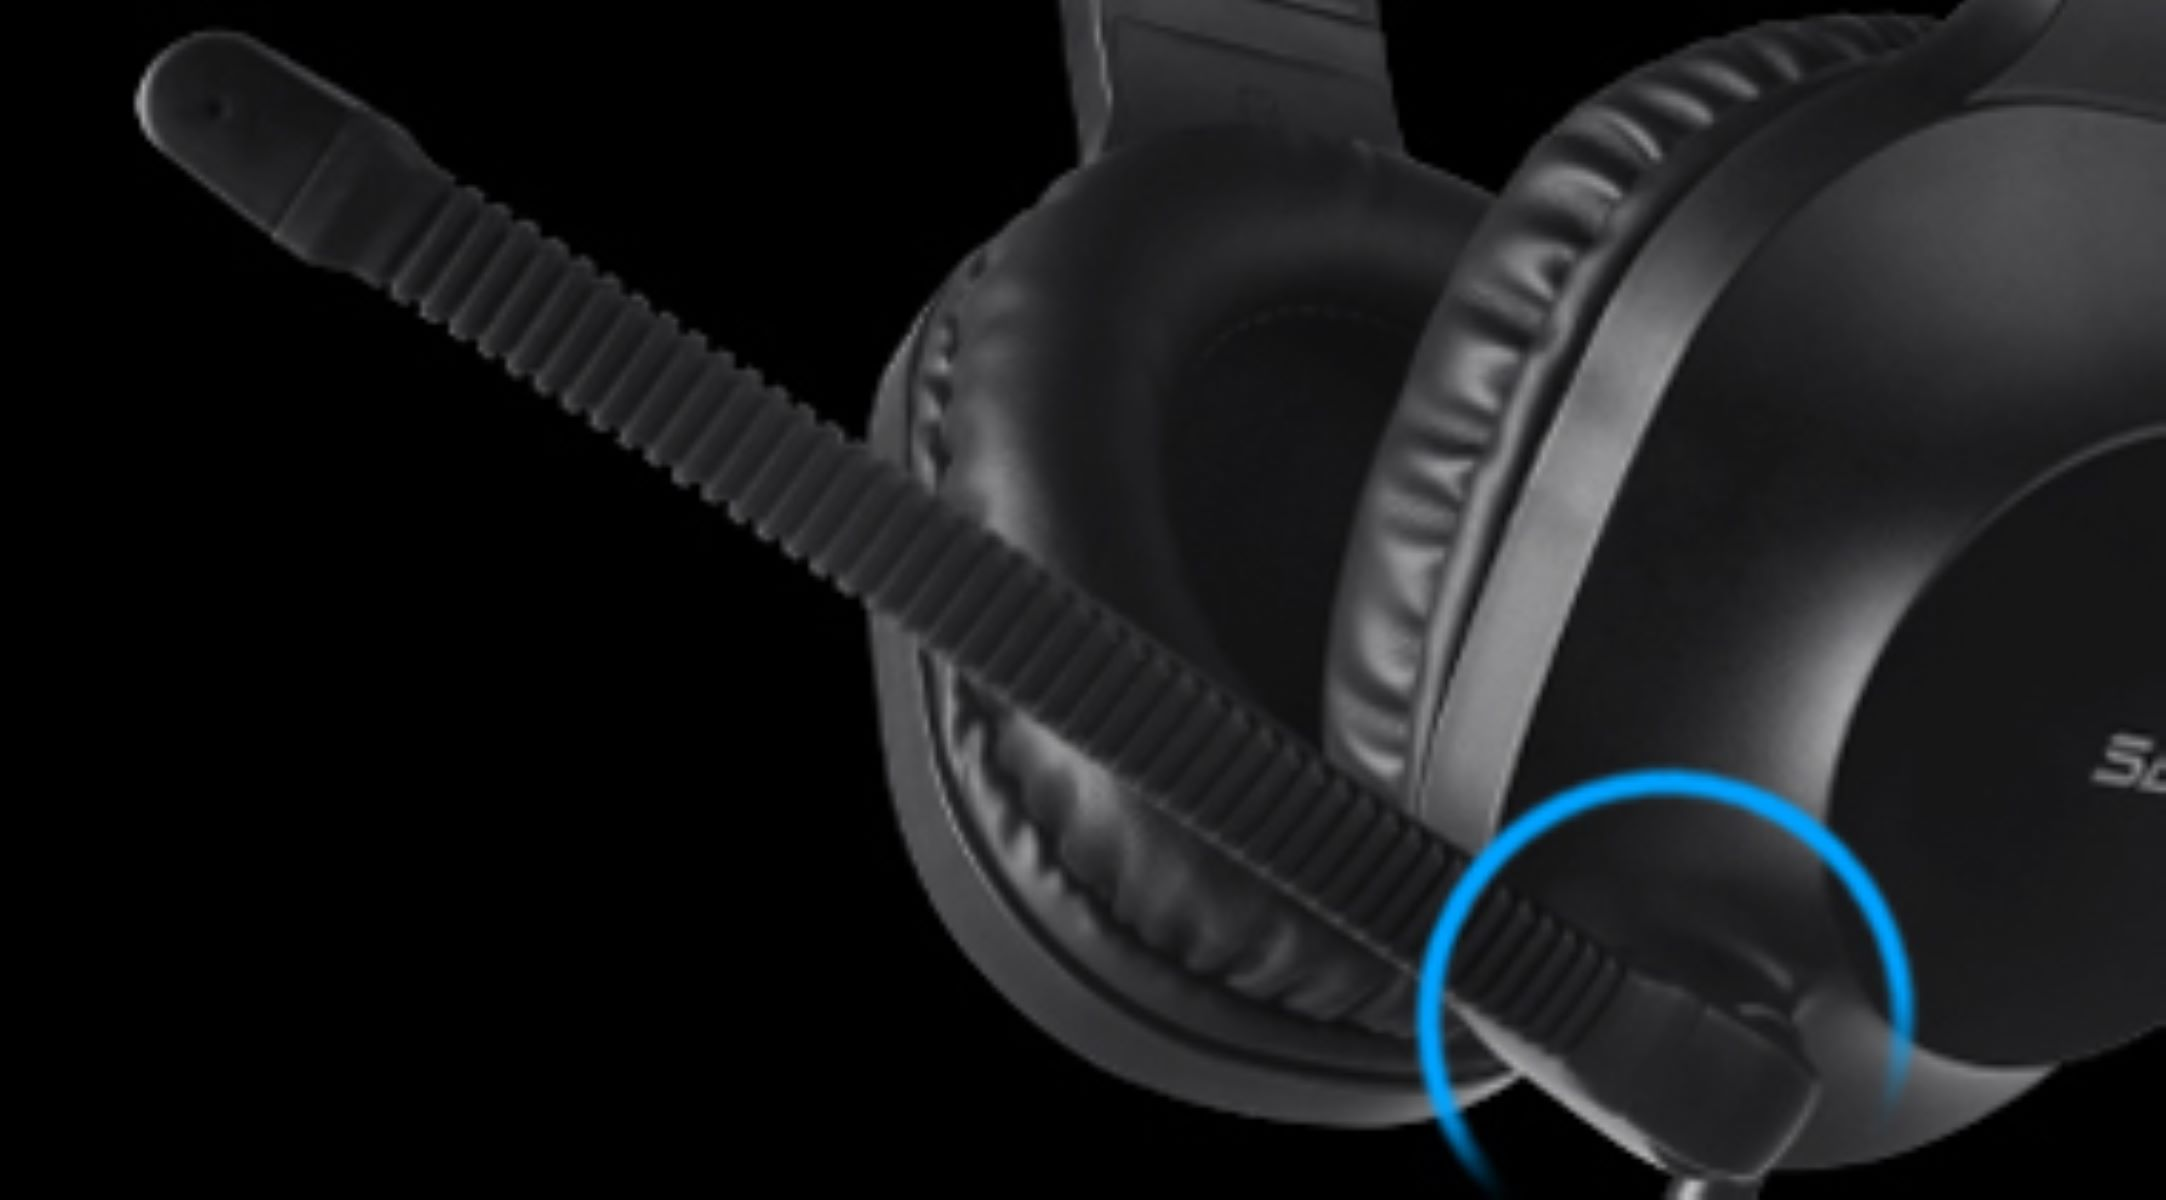 SADES Spirits SA-721, Gaming-Headset Over-ear blau